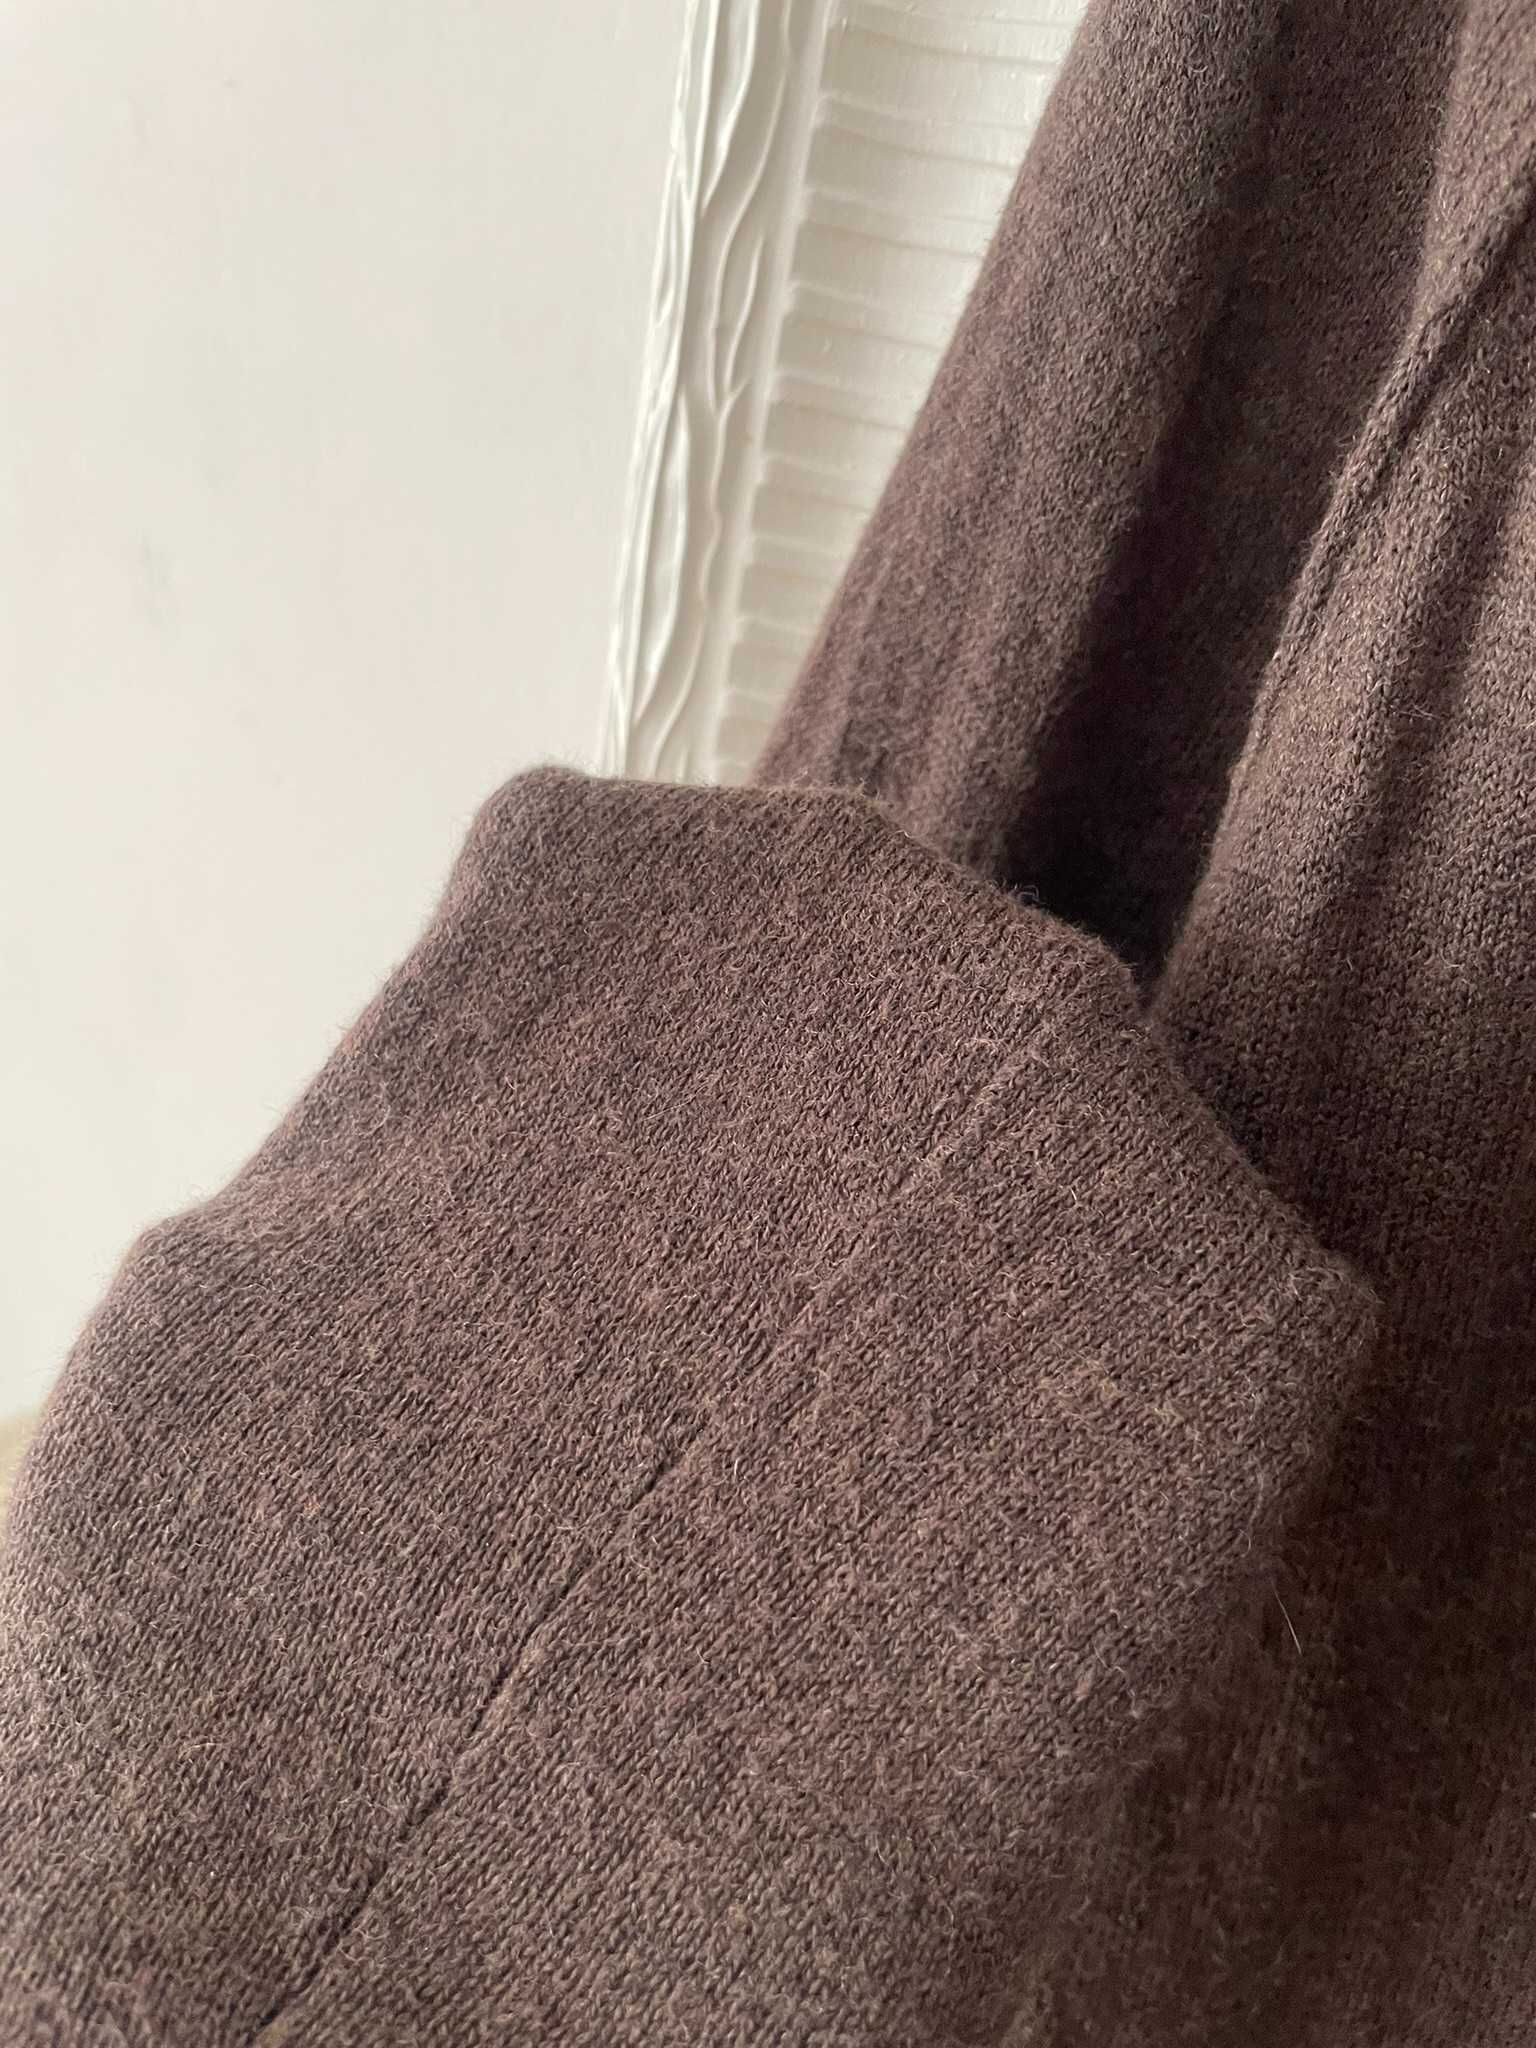 Sweter brązowy kardigan guziki kieszenie 30% wełna bawełna S 36 M 38